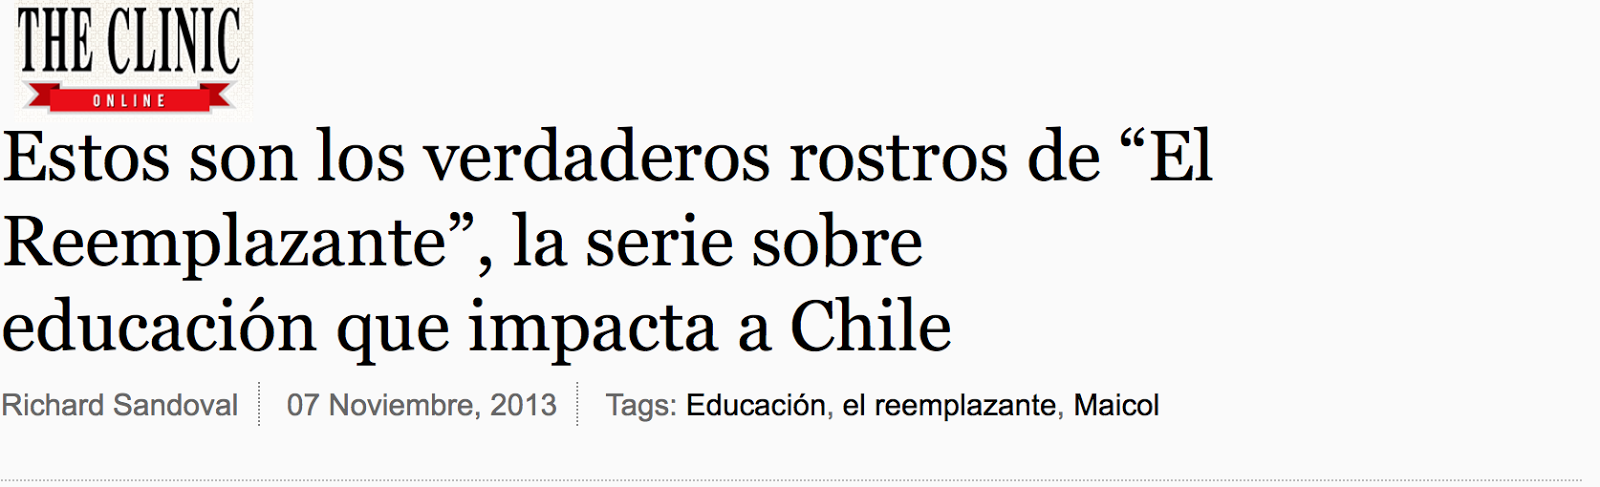 http://www.theclinic.cl/2013/11/07/estos-son-los-verdaderos-rostros-de-el-reemplazante-la-serie-sobre-educacion-que-impacta-a-chile/